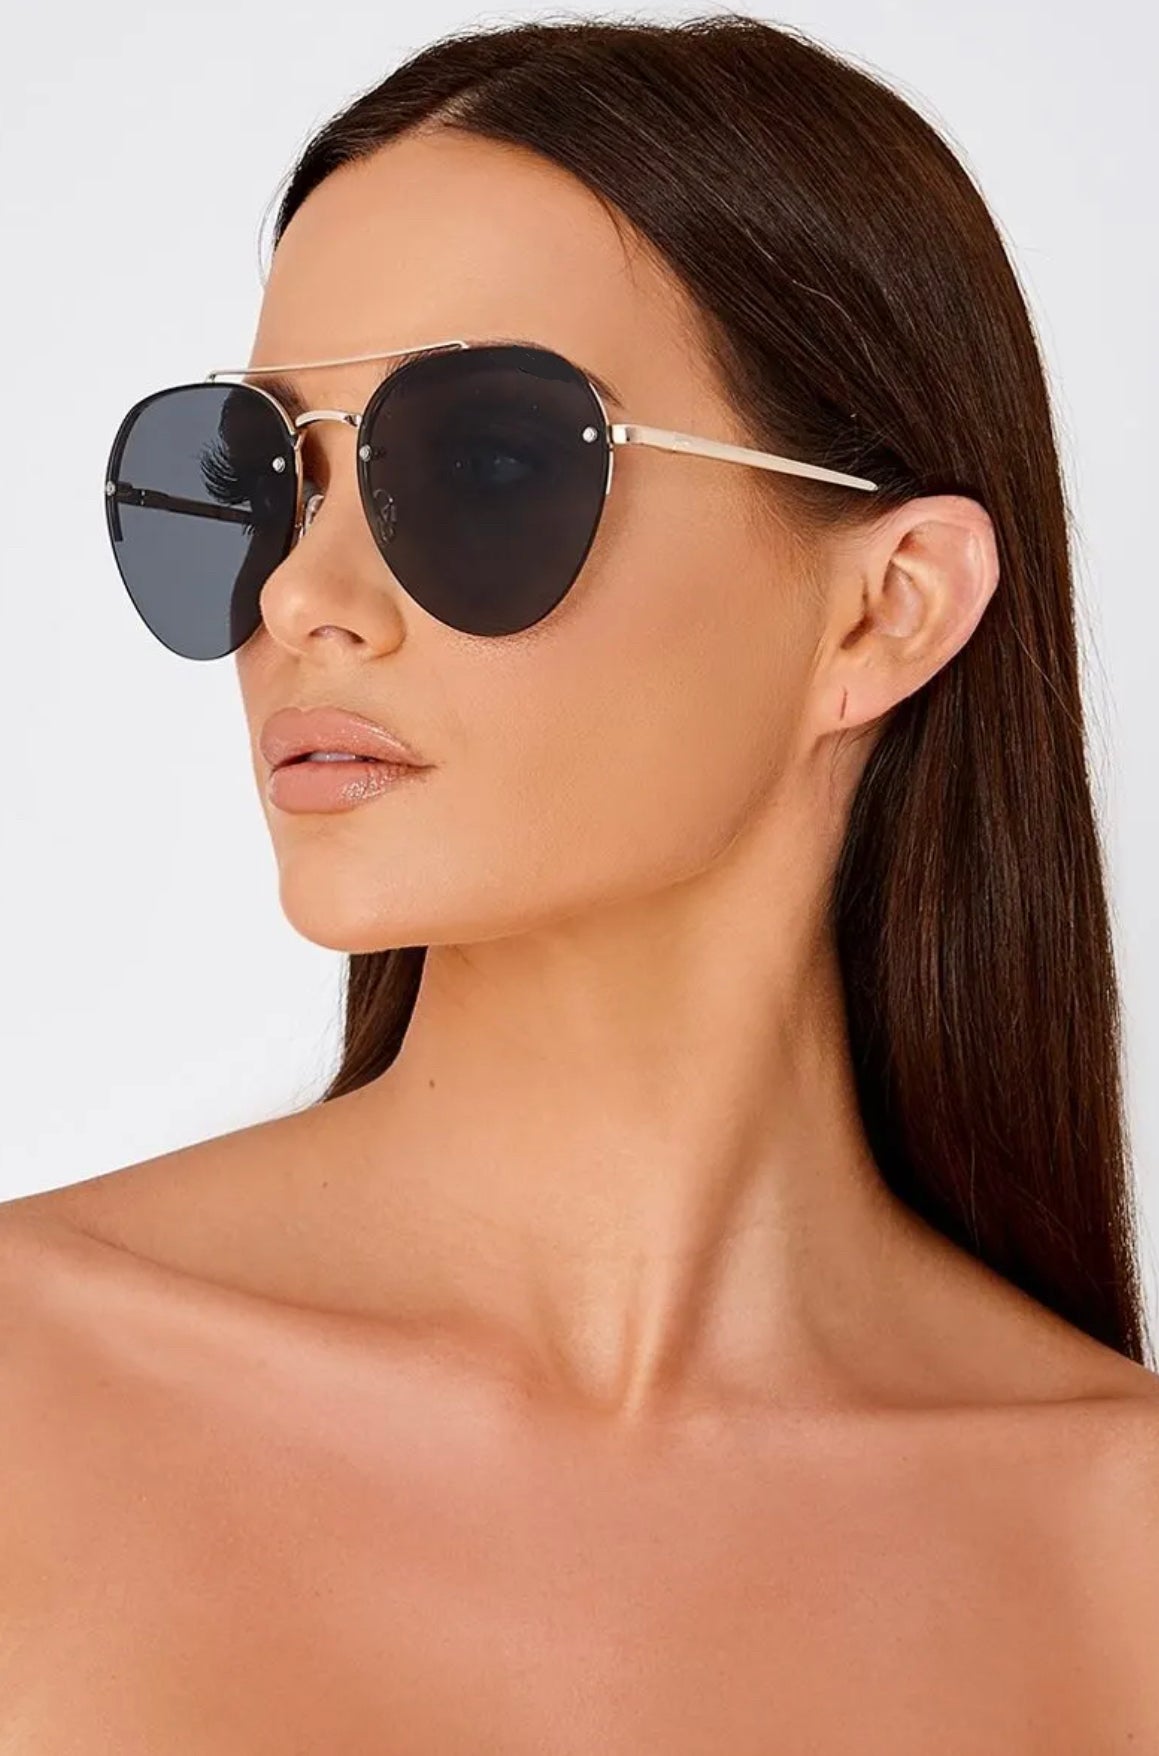 Buy HeyChasma UV 400 Lens Sunglasses for men & women metal frame sunglasses  pilot Sunglasses (Black) at Amazon.in